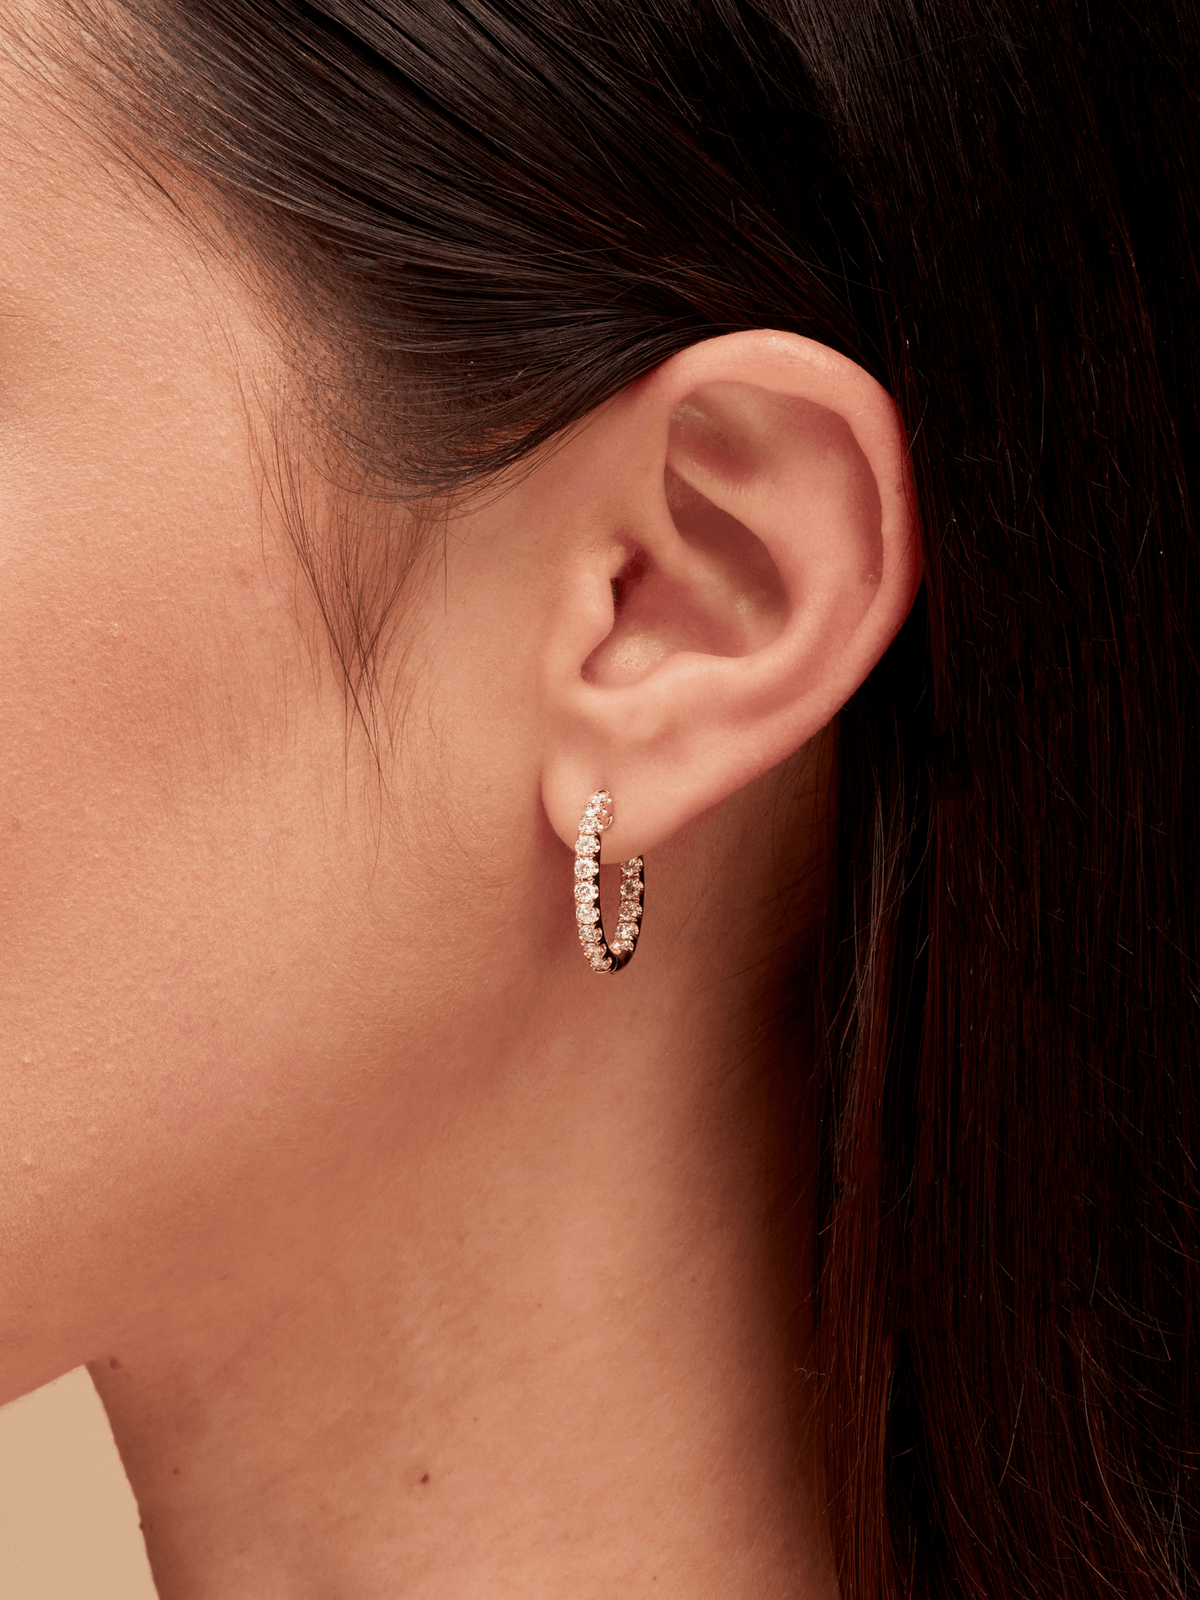 LeMel Signature Diamond Hoop Earrings 18K - LeMel